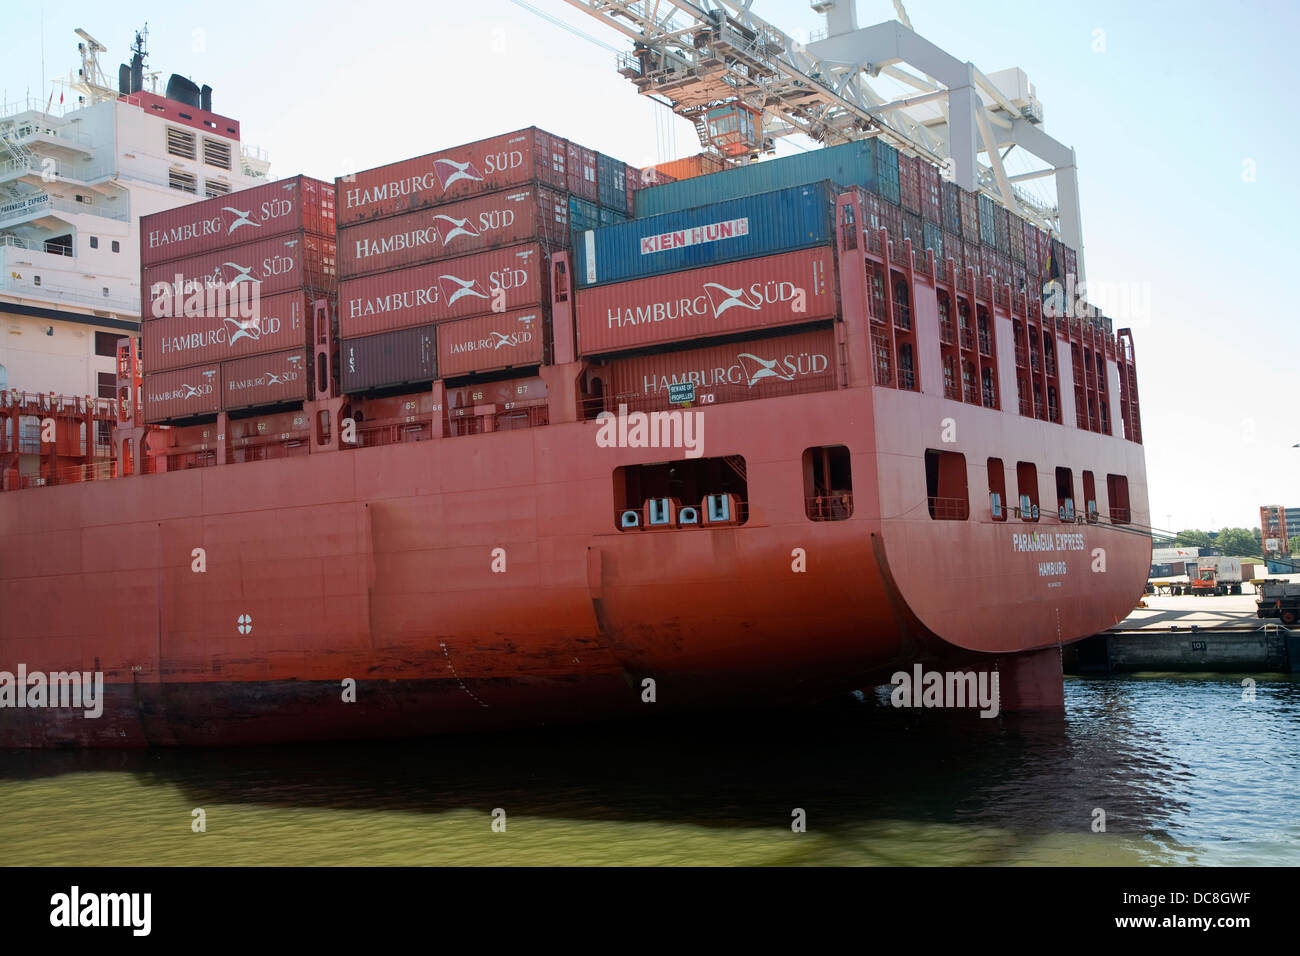 Paranagua-Express Schiff Hamburg Sud Line Hafen von Rotterdam, Niederlande Stockfoto